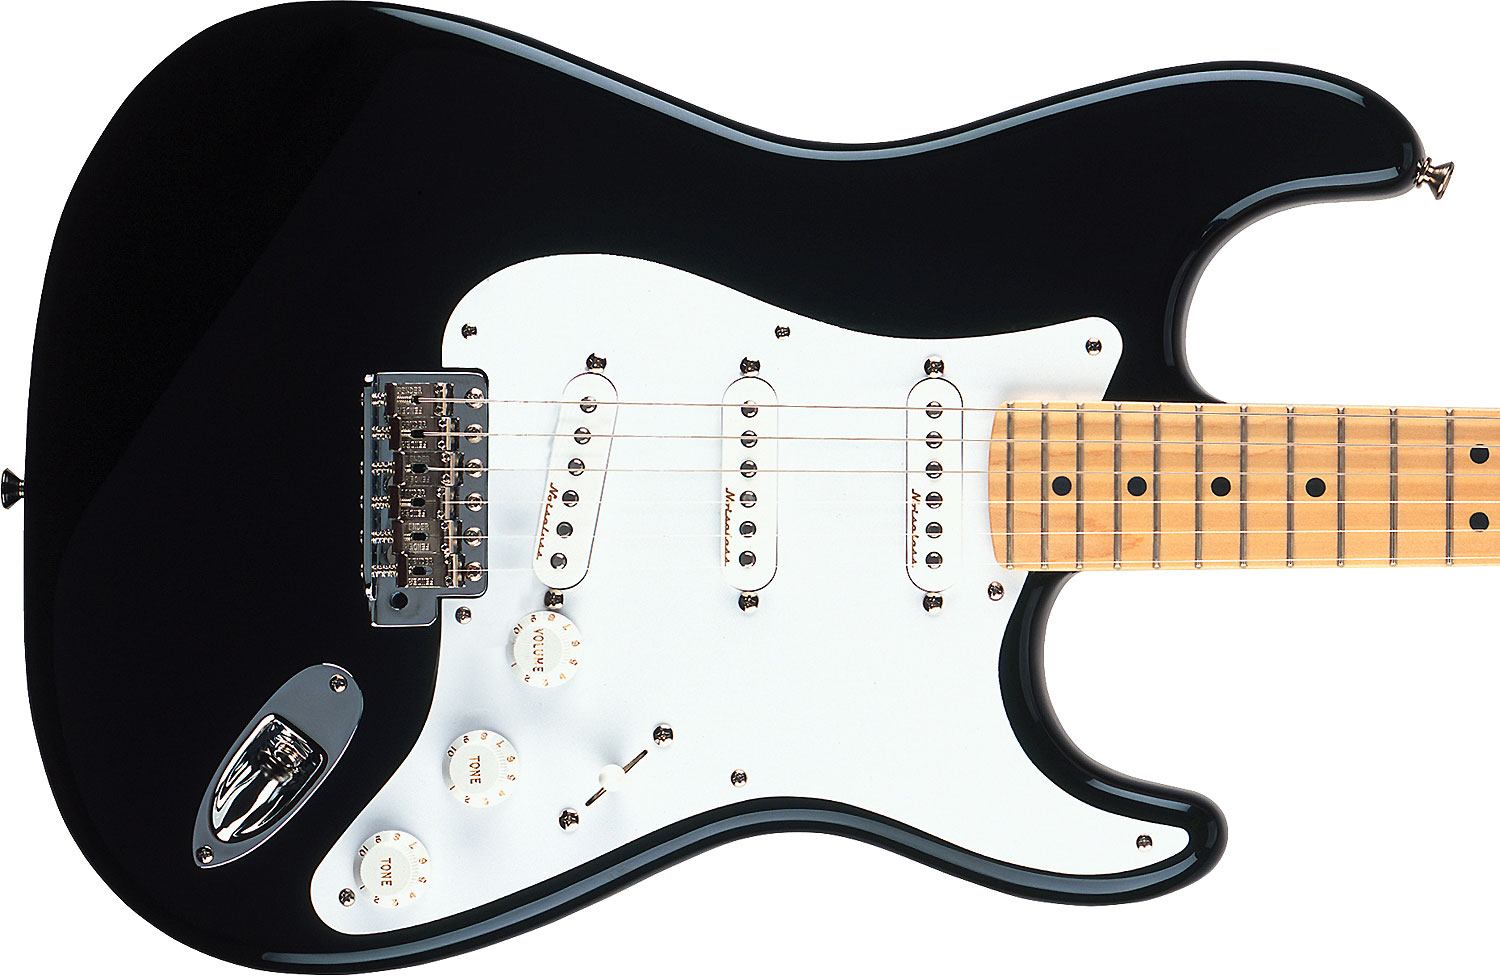 Fender Strat Eric Clapton Usa Signature 3s Trem Mn - Black - E-Gitarre in Str-Form - Variation 2